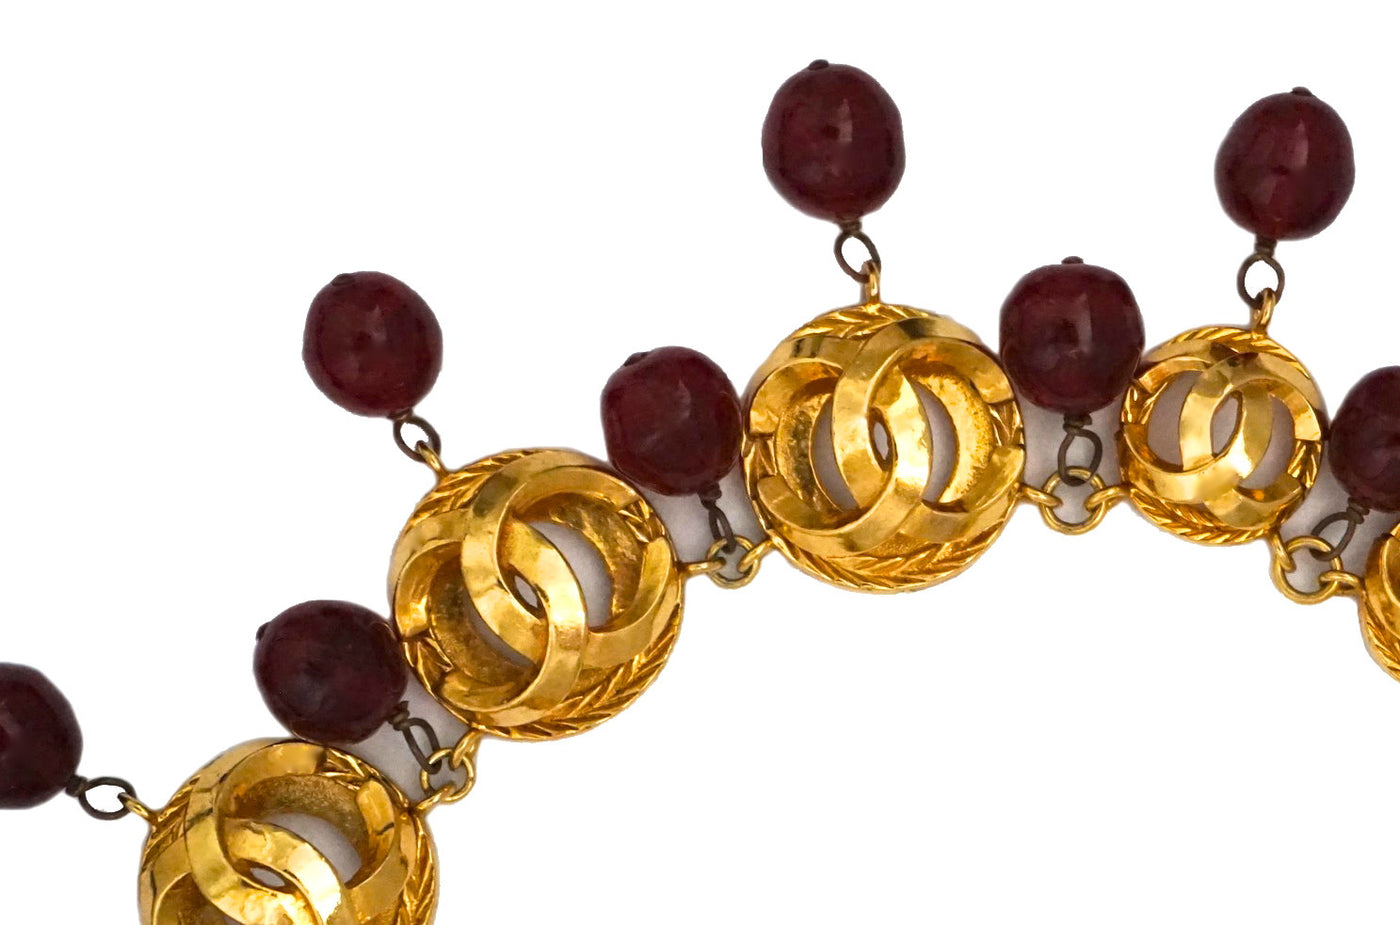 Authentic Chanel Vintage Burgundy Gripoix & Charm Necklace